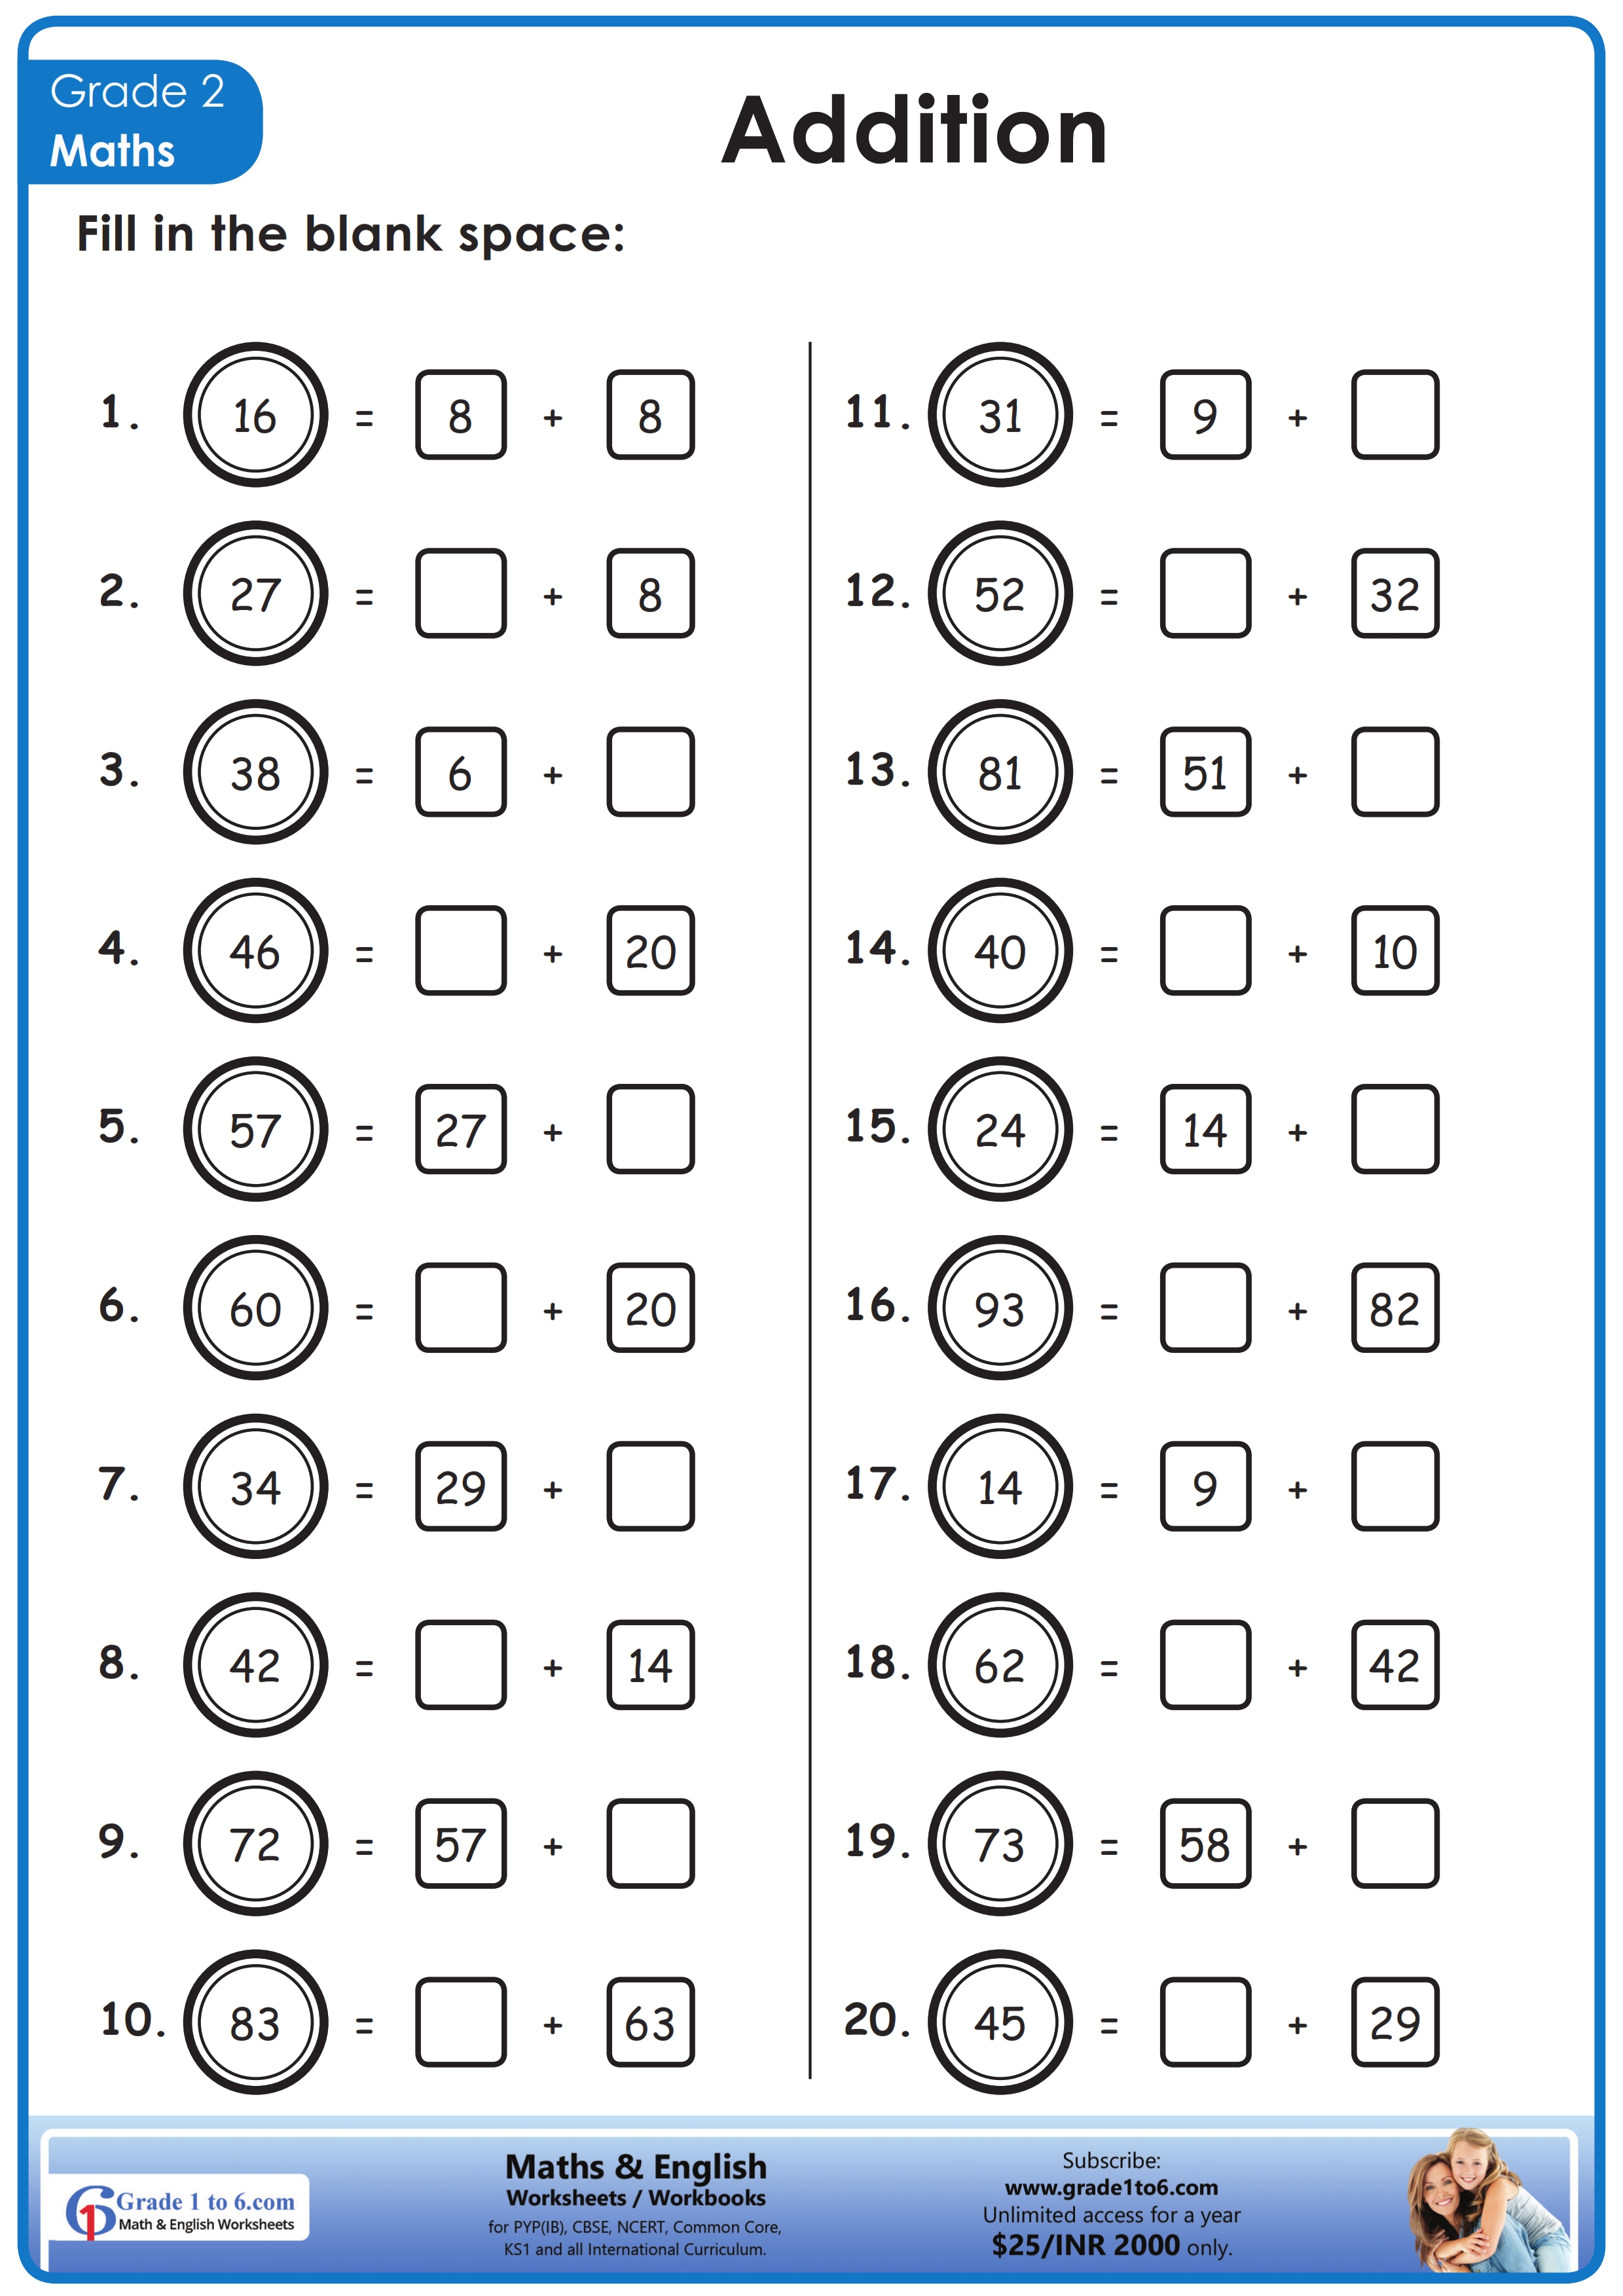 maths-worksheet-for-class-2-grade1to6